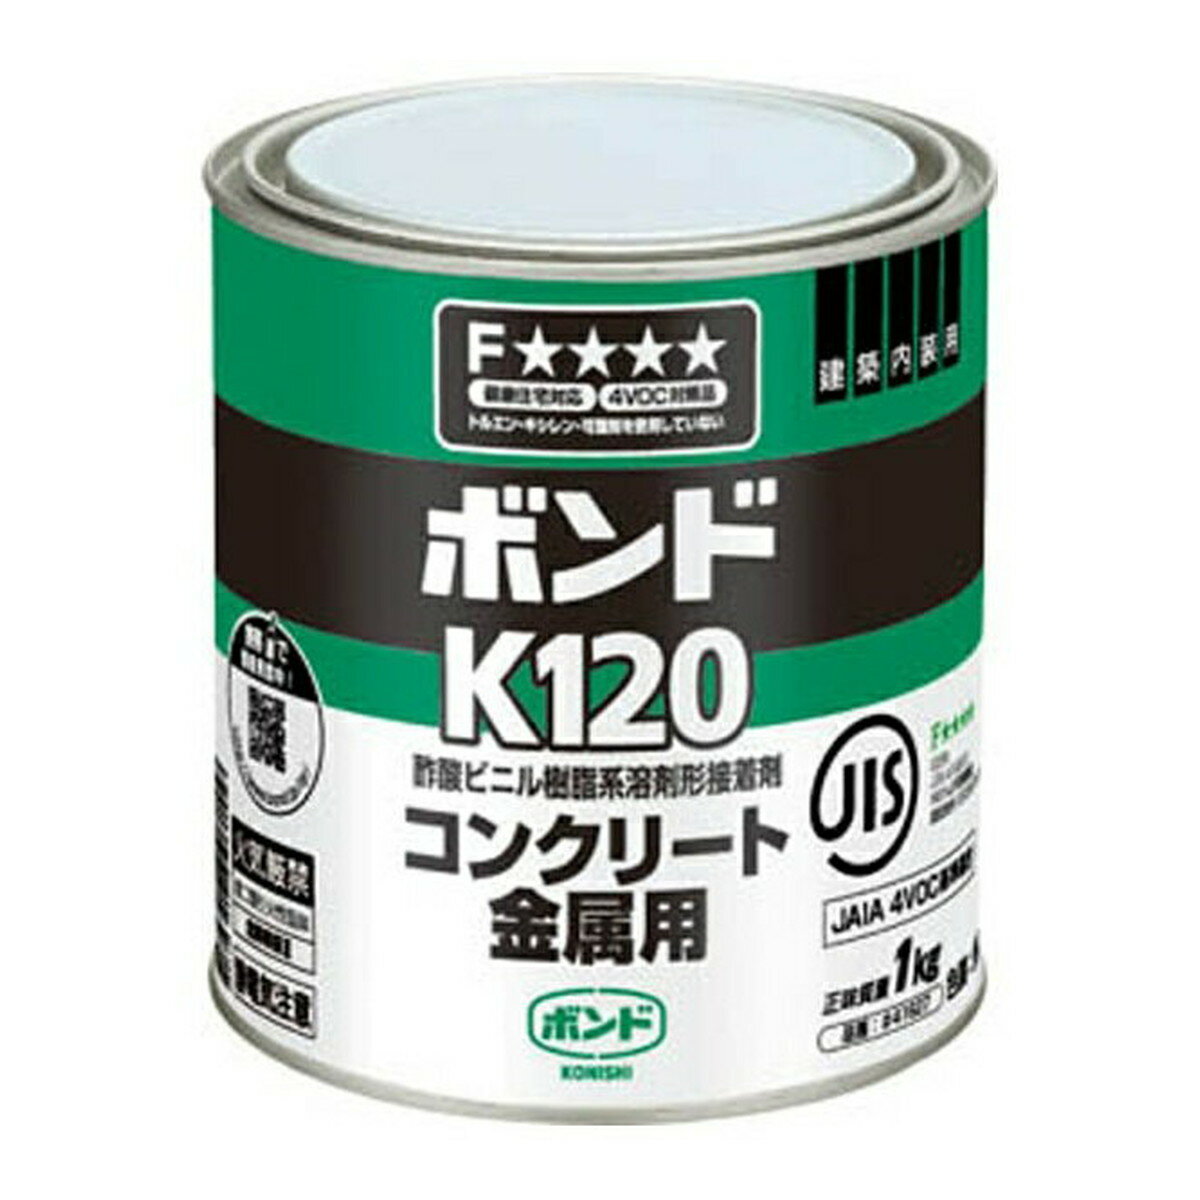 商品名：コニシ ボンド K120 コンクリート金属用 1kg 缶内容量：1kgJANコード：4901490416271発売元、製造元、輸入元又は販売元：コニシ原産国：日本商品番号：101-4901490416271商品説明衝撃や、はく離荷重に優れた耐性を発揮します。日本接着剤工業会JAIA 4VOC基準適合品です。広告文責：アットライフ株式会社TEL 050-3196-1510 ※商品パッケージは変更の場合あり。メーカー欠品または完売の際、キャンセルをお願いすることがあります。ご了承ください。